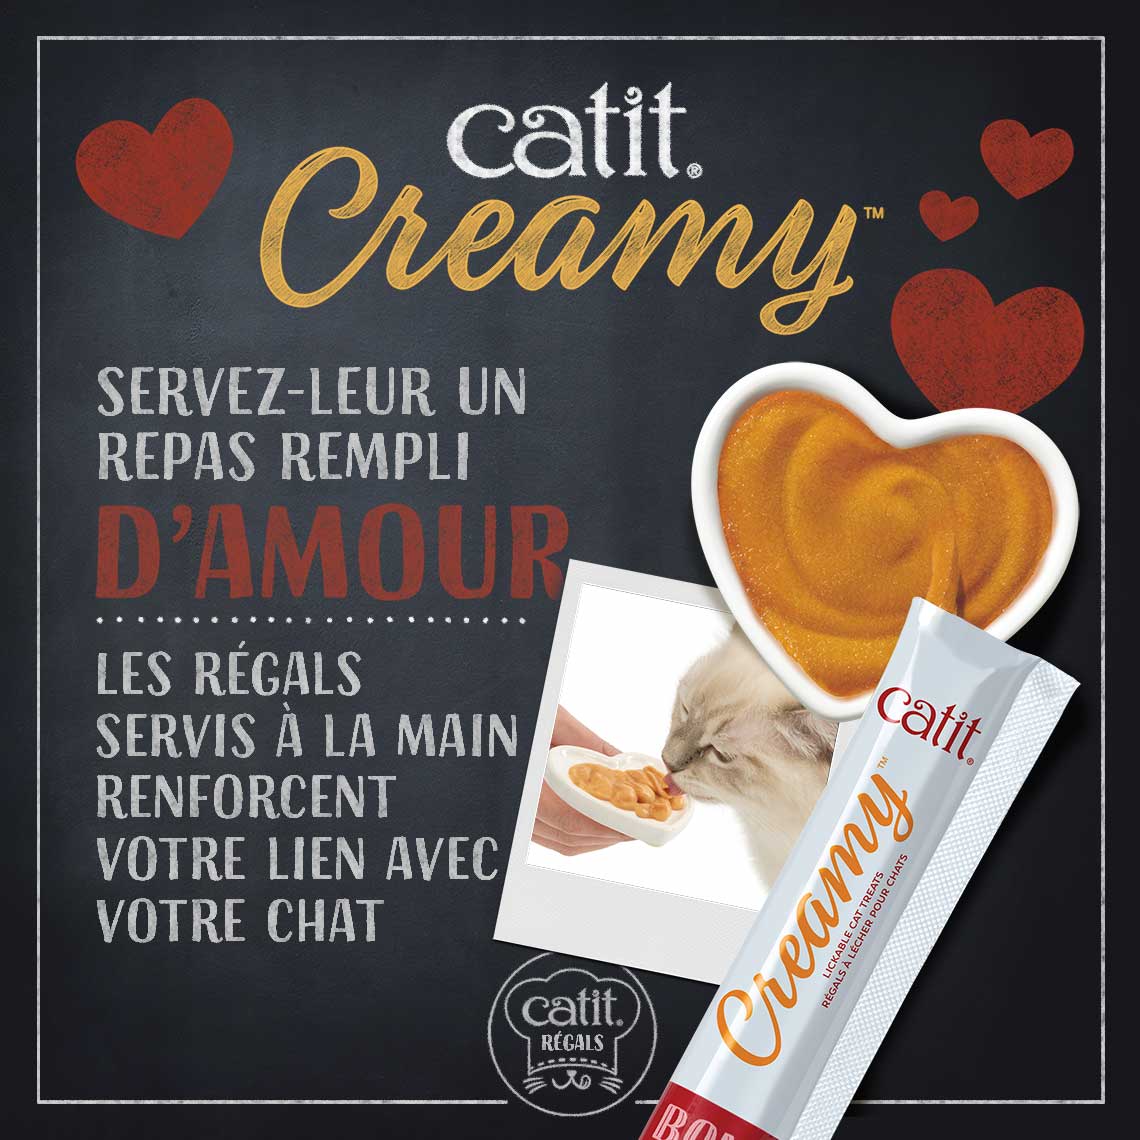 Friandises Catit Creamy – paquet de 15 ─ Poulet et agneau